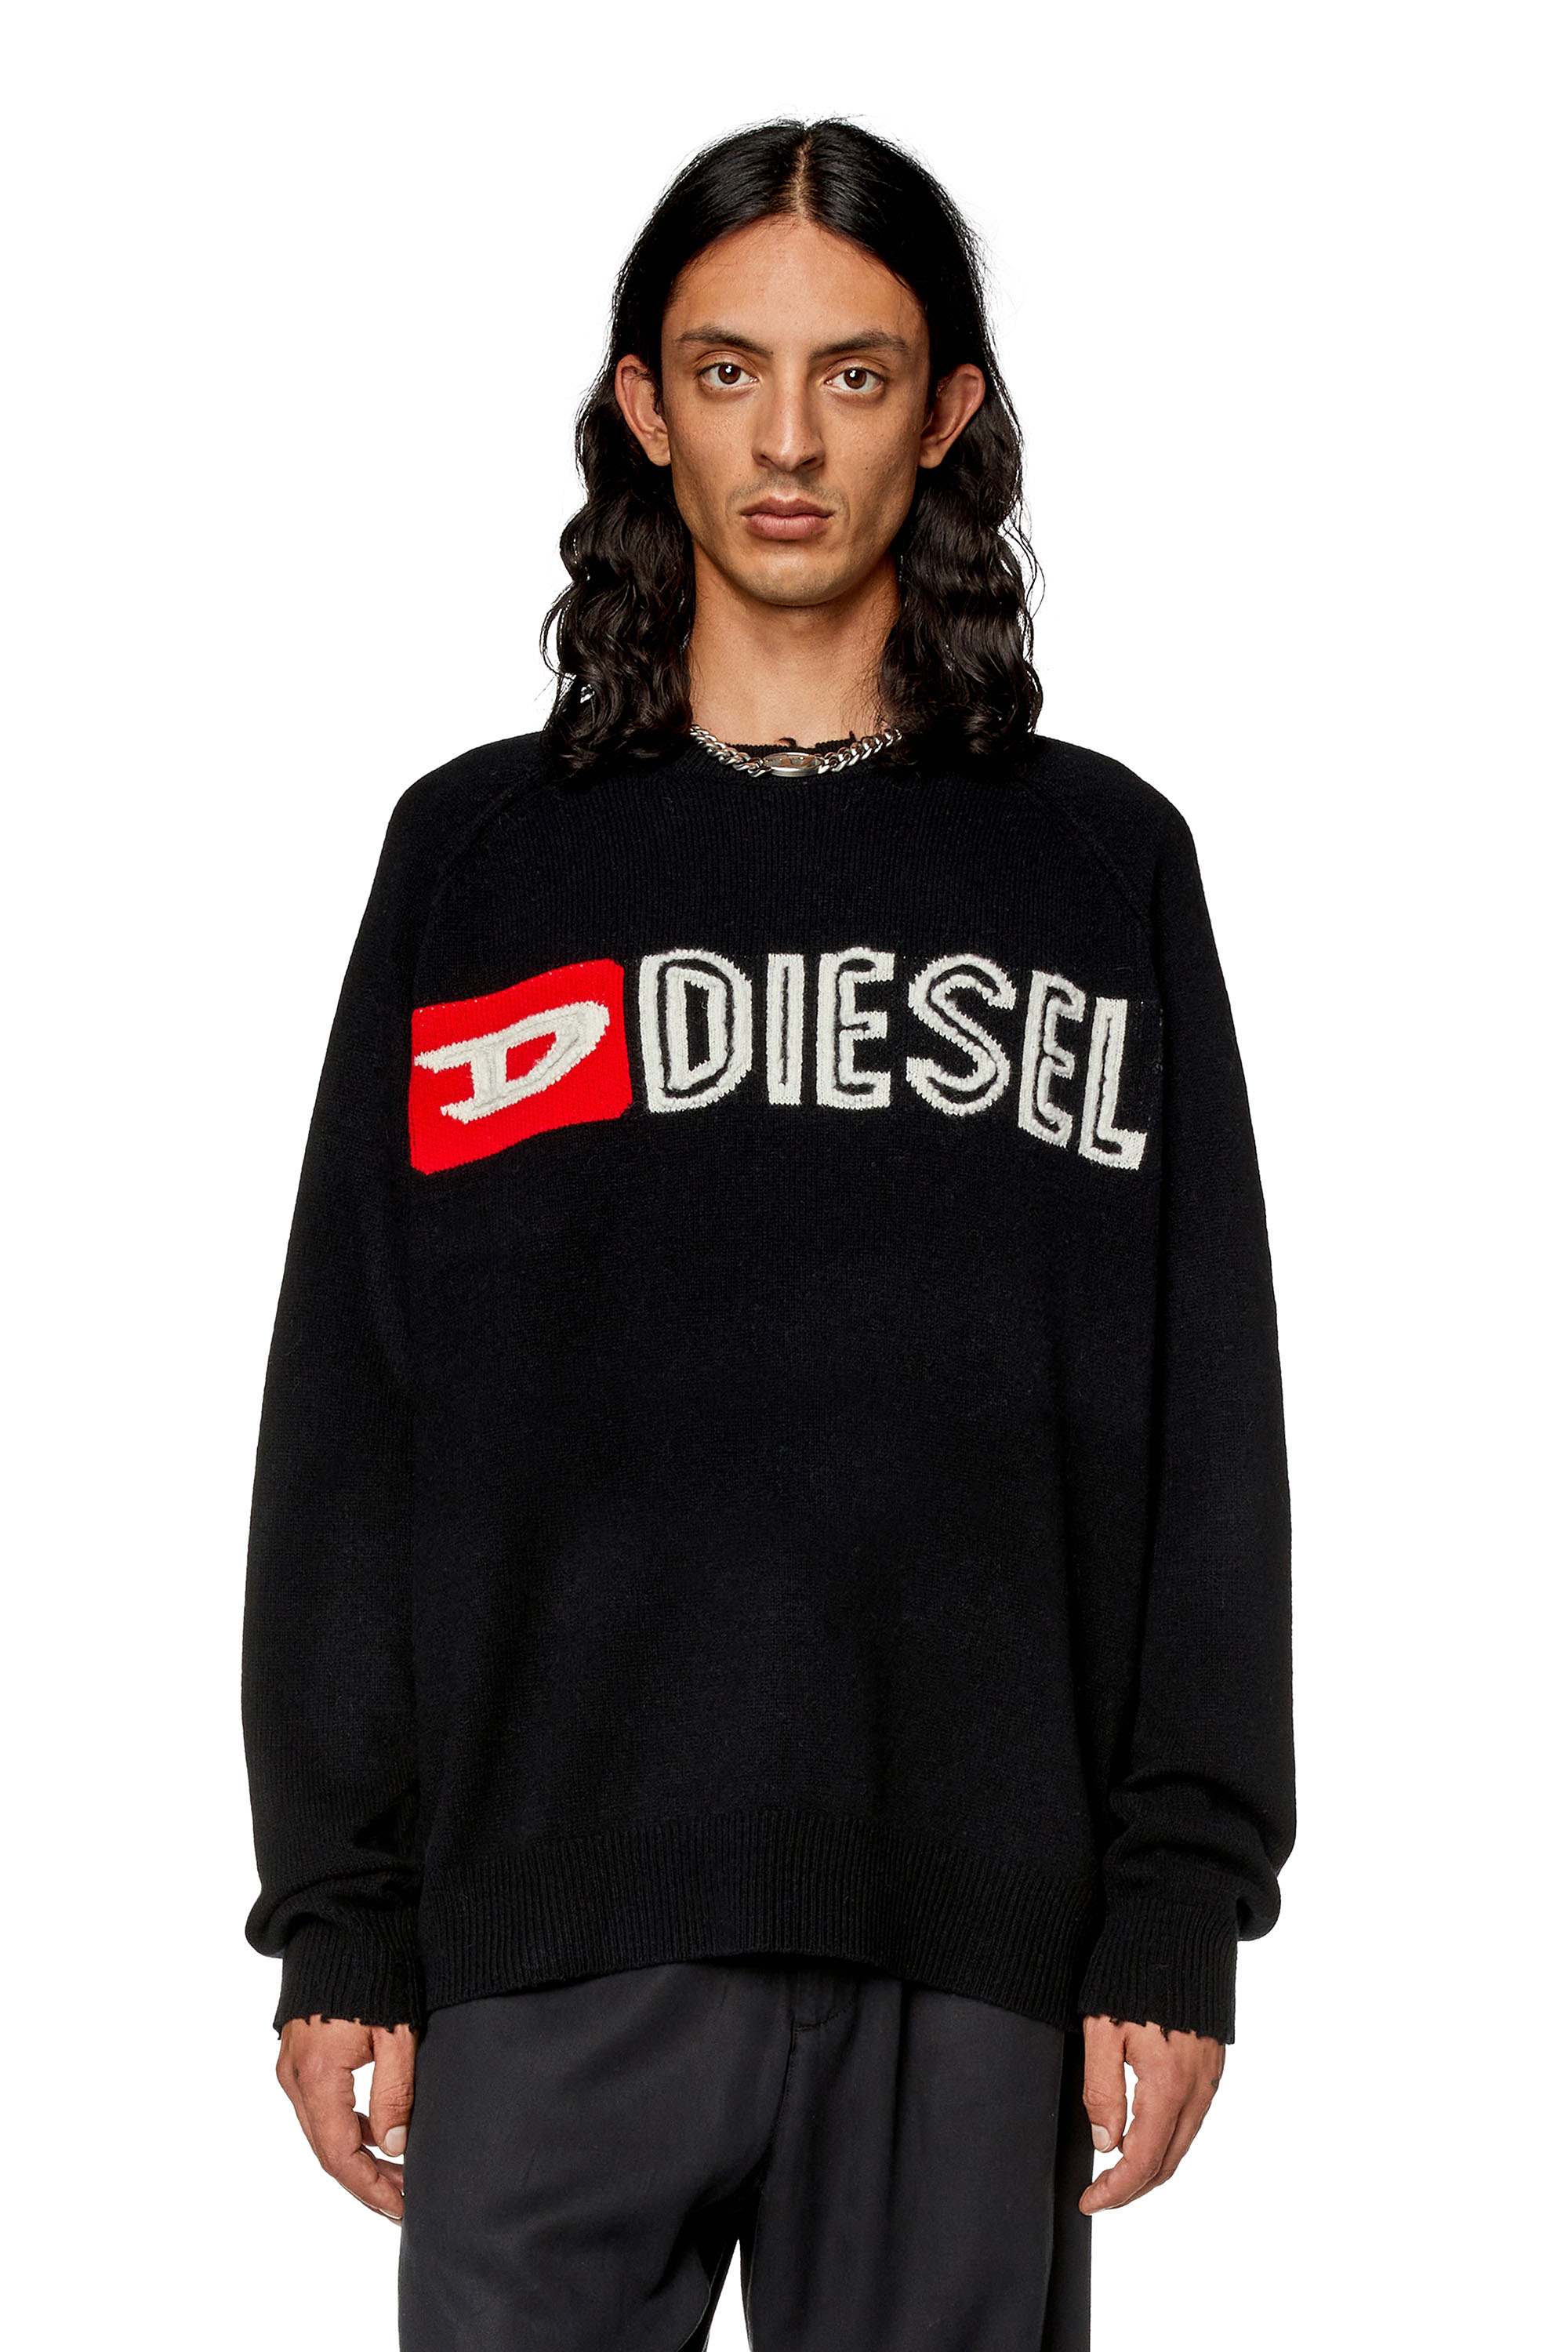 Diesel - Jersey de lana con cuello redondo y logotipo recortado - Punto - Hombre - Negro